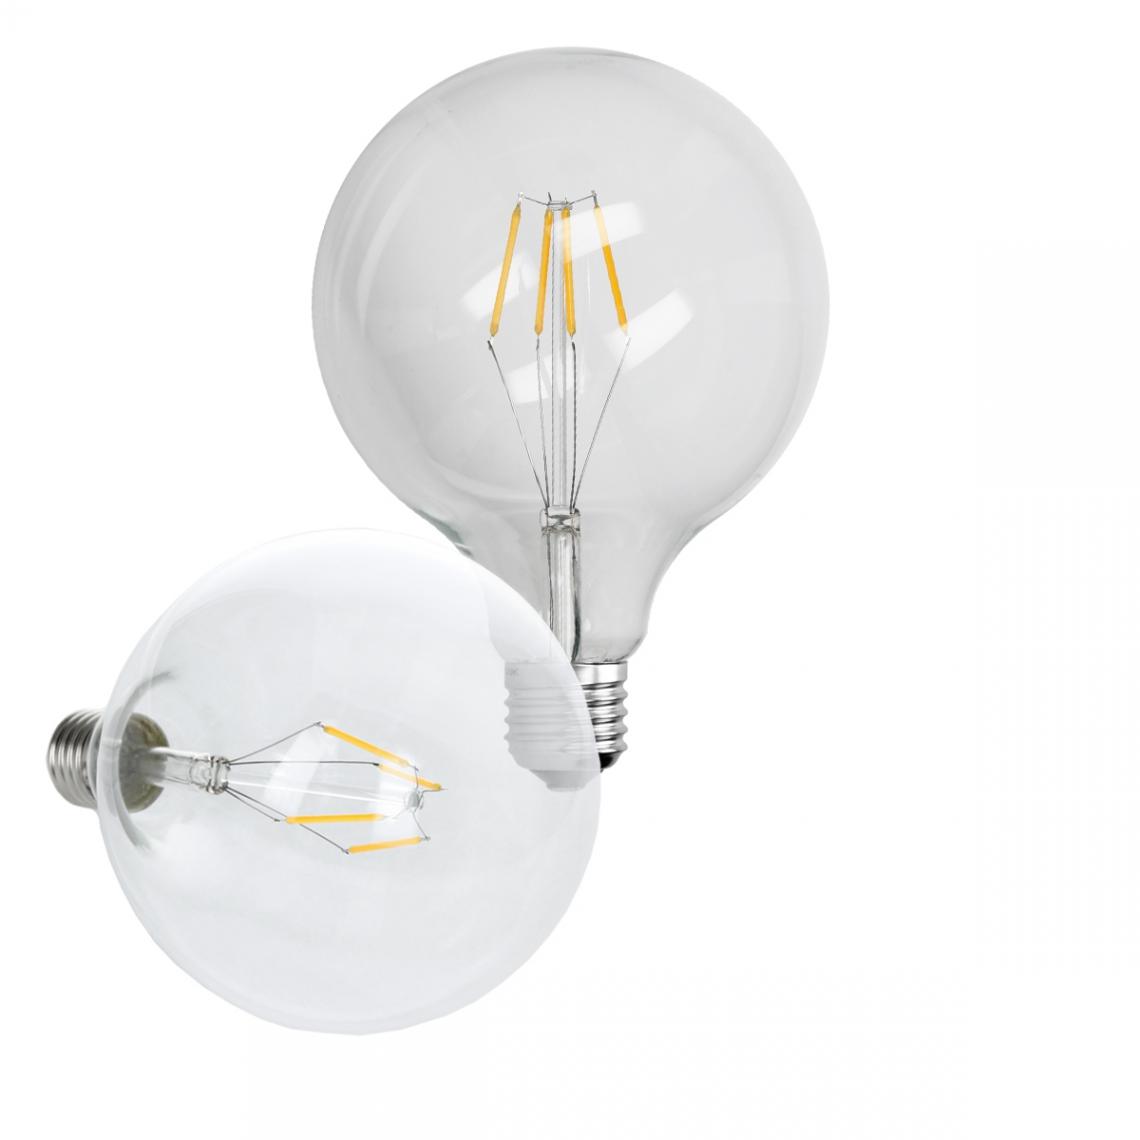 Ecd Germany - 5 x ampoule LED à gros filament E27 4W 125 mm blanc chaud - Ampoules LED